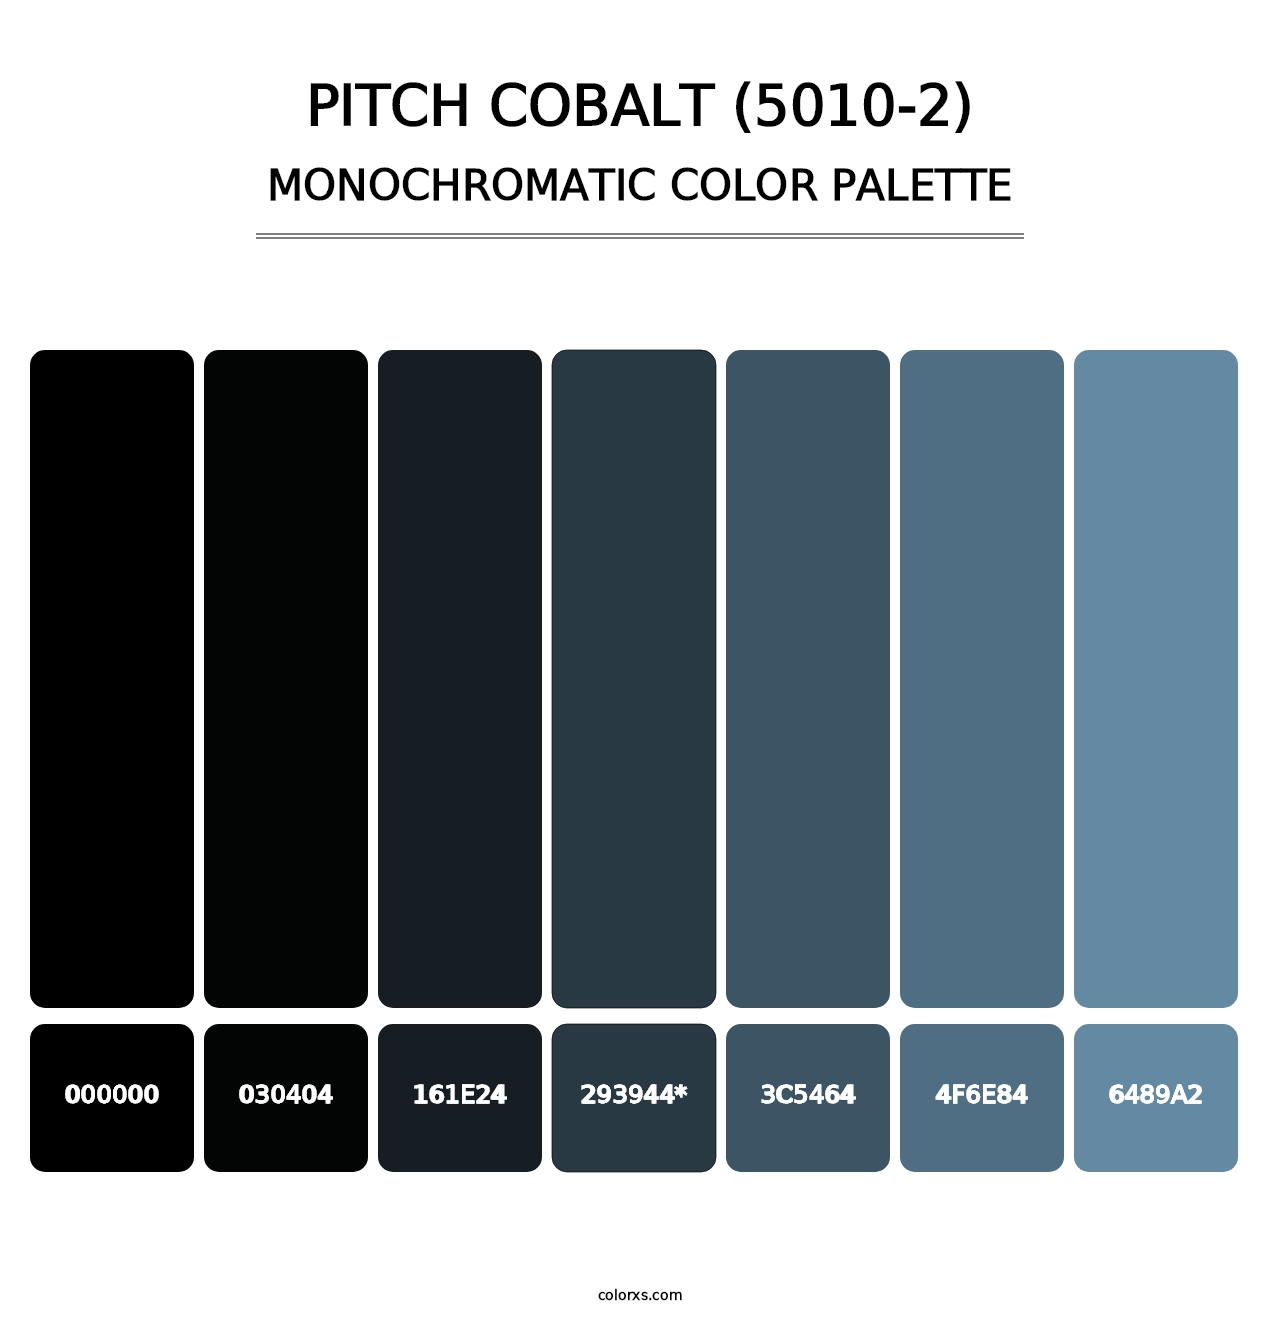 Pitch Cobalt (5010-2) - Monochromatic Color Palette